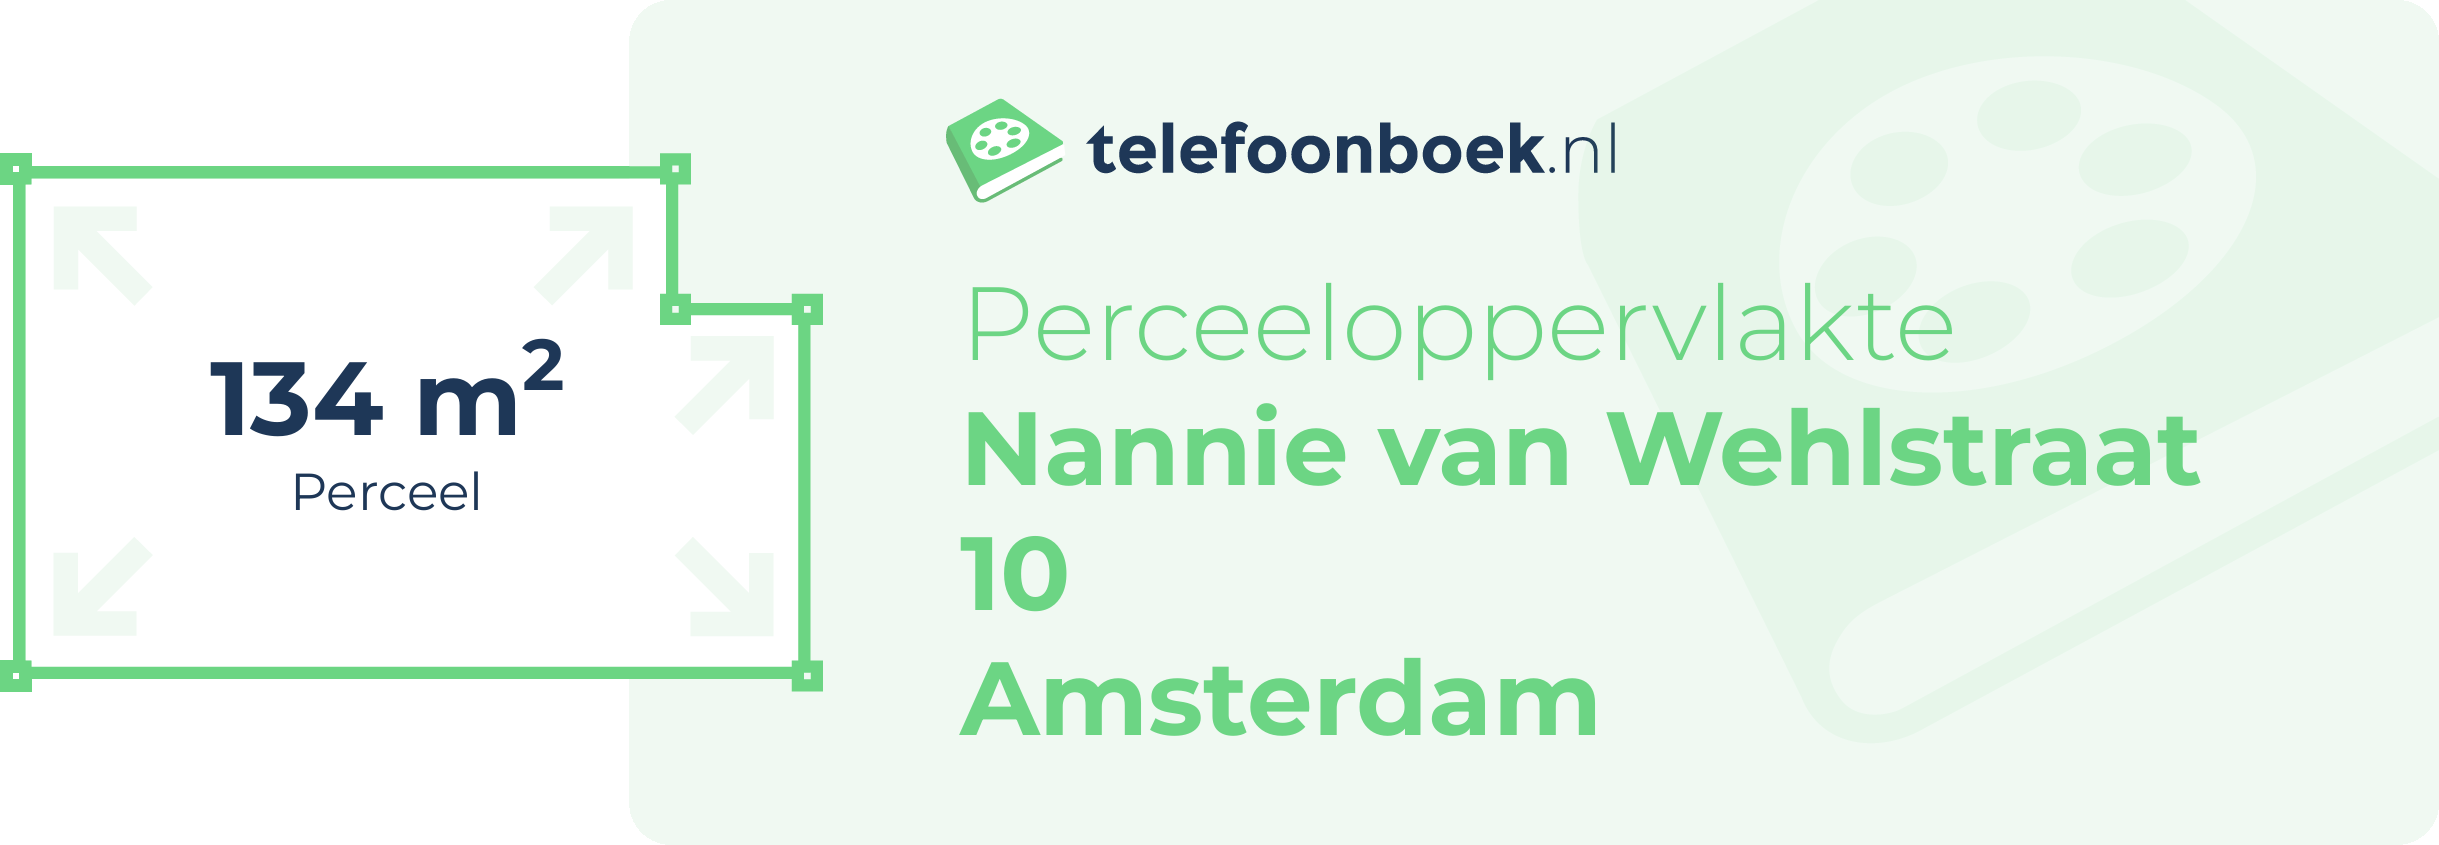 Perceeloppervlakte Nannie Van Wehlstraat 10 Amsterdam